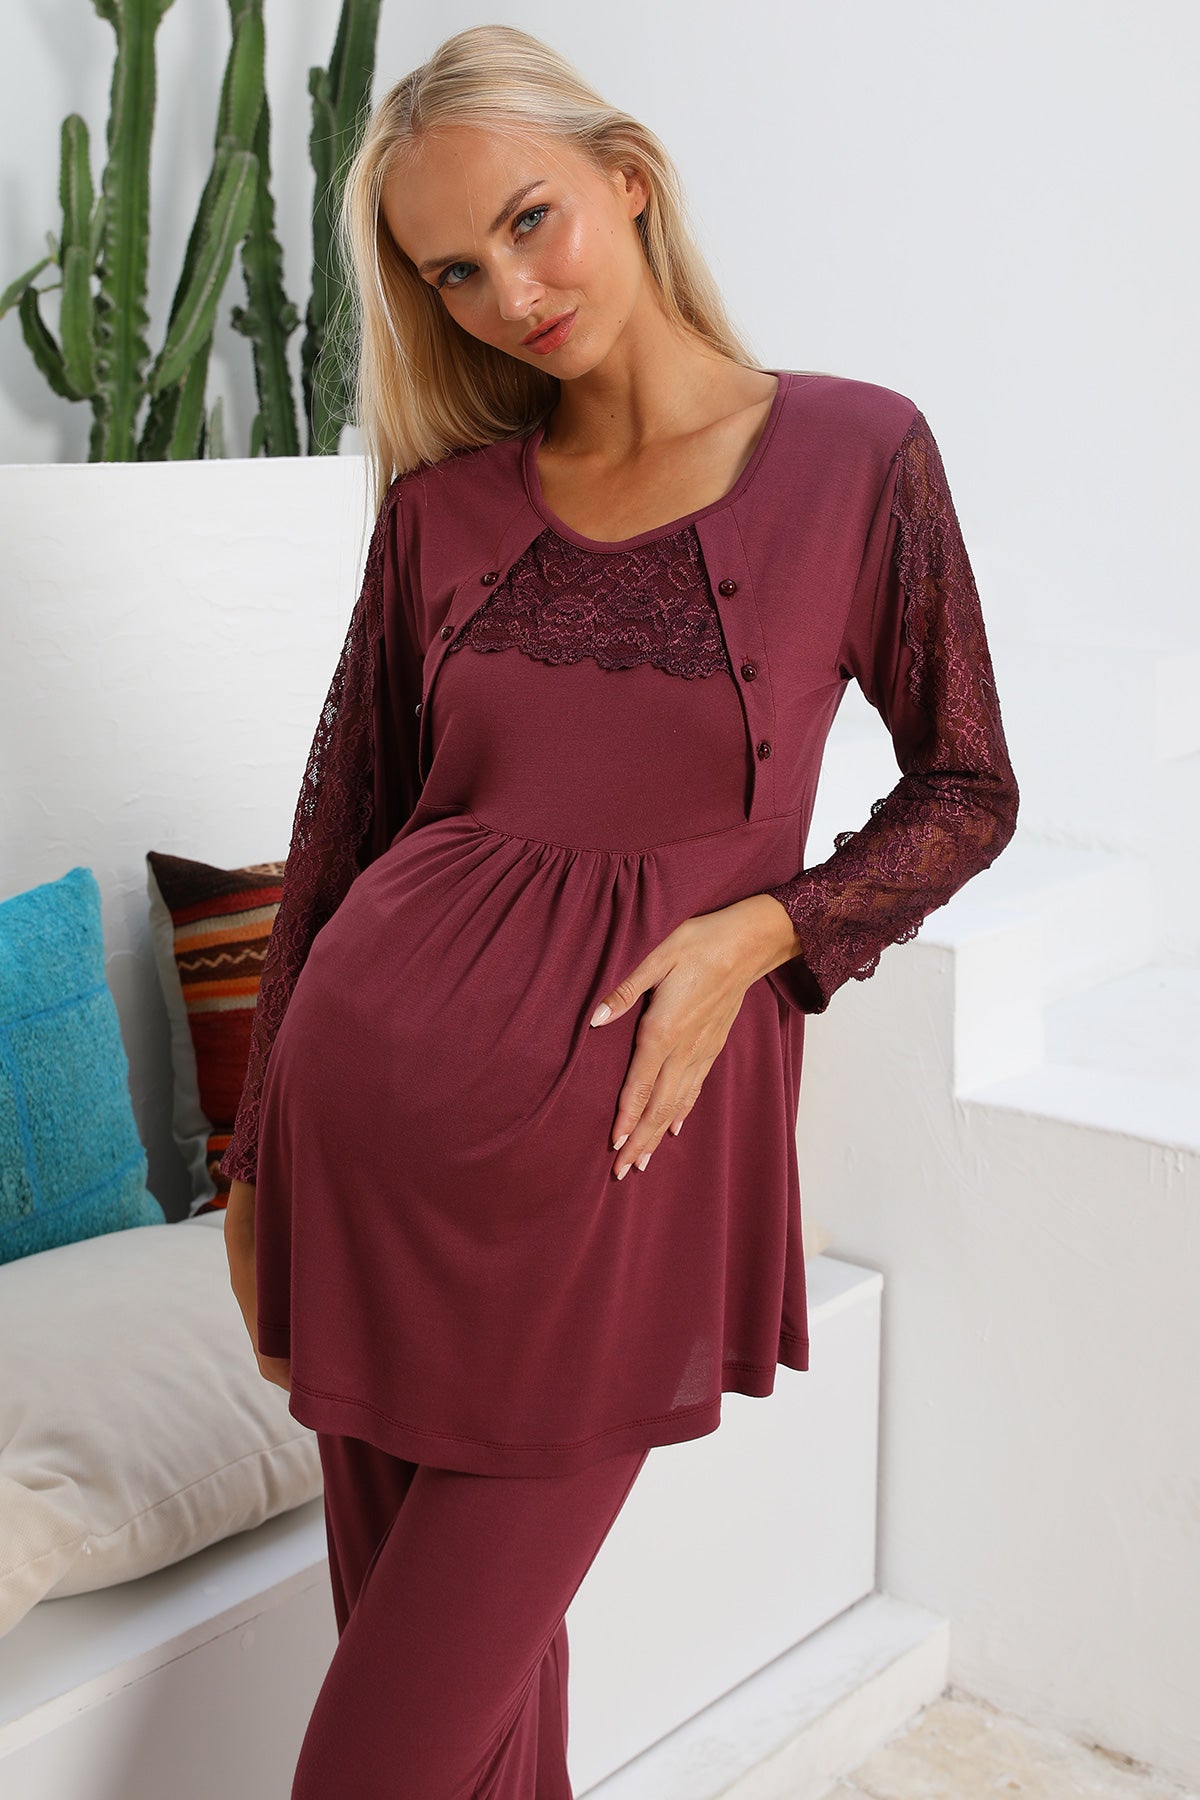 Shopymommy 55303 Elegance Lace Sleeves Maternity & Nursing Pajamas Plum